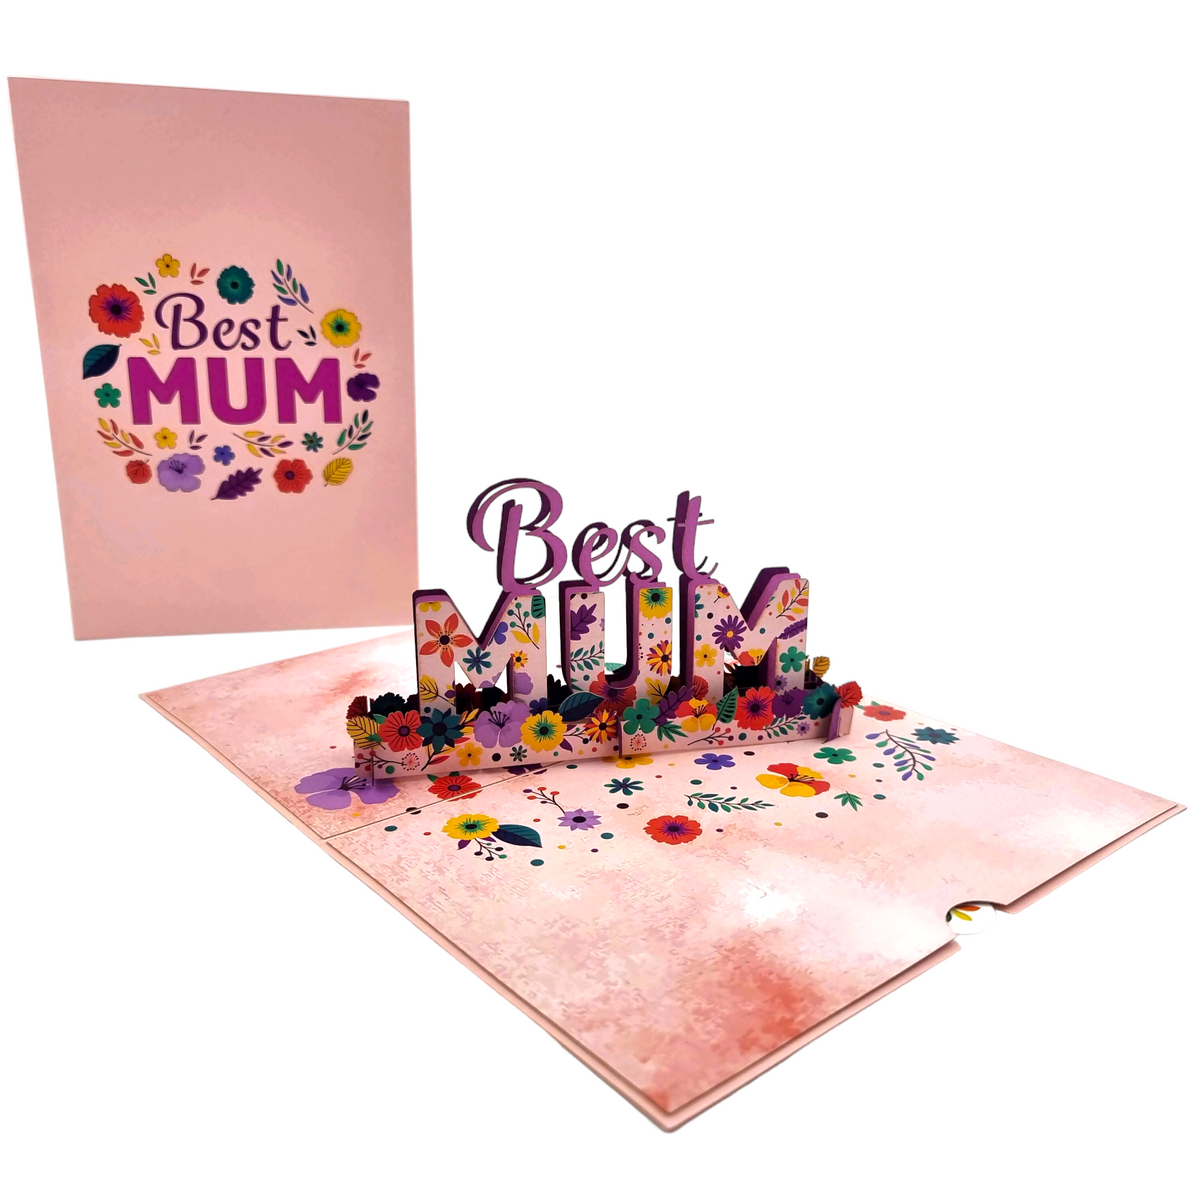 Best Mum Pop Up Card